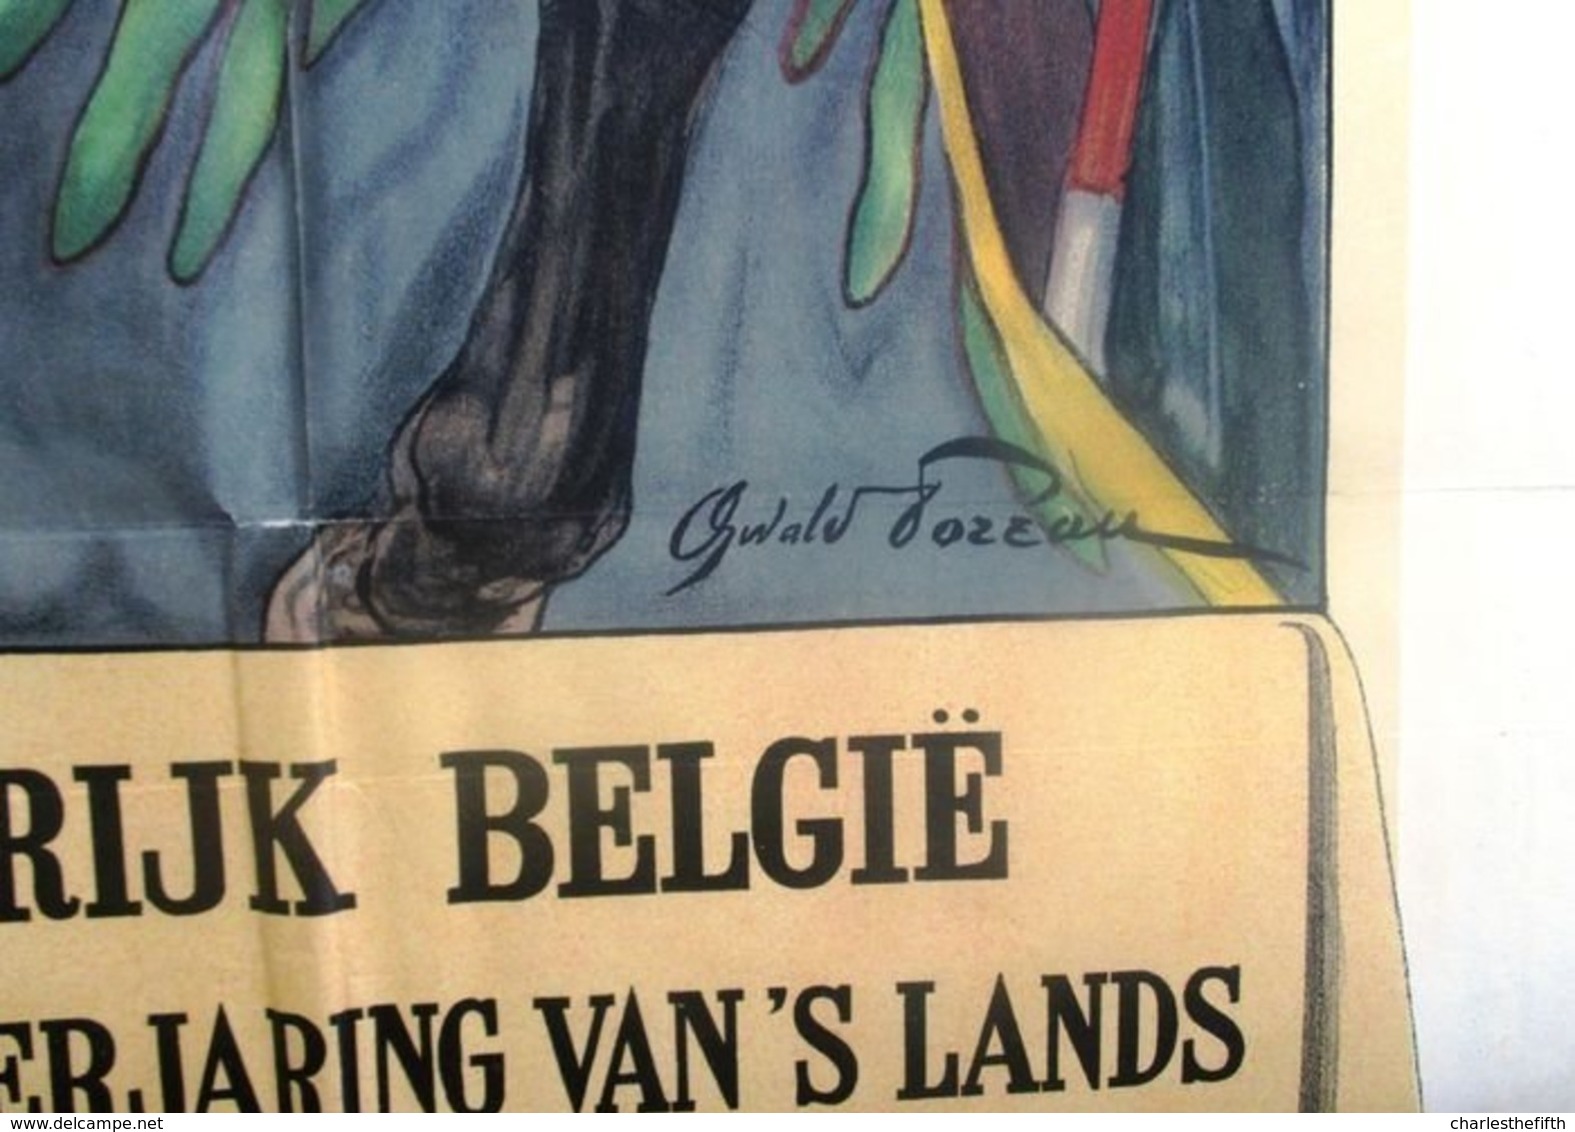 SUPERBE AFFICHE ** GRAND CORTEGE HISTORIQUE BRUXELLES 1930 ** 1.60 X 1.20m !! TRES BELLE AFFICHE - Affiches